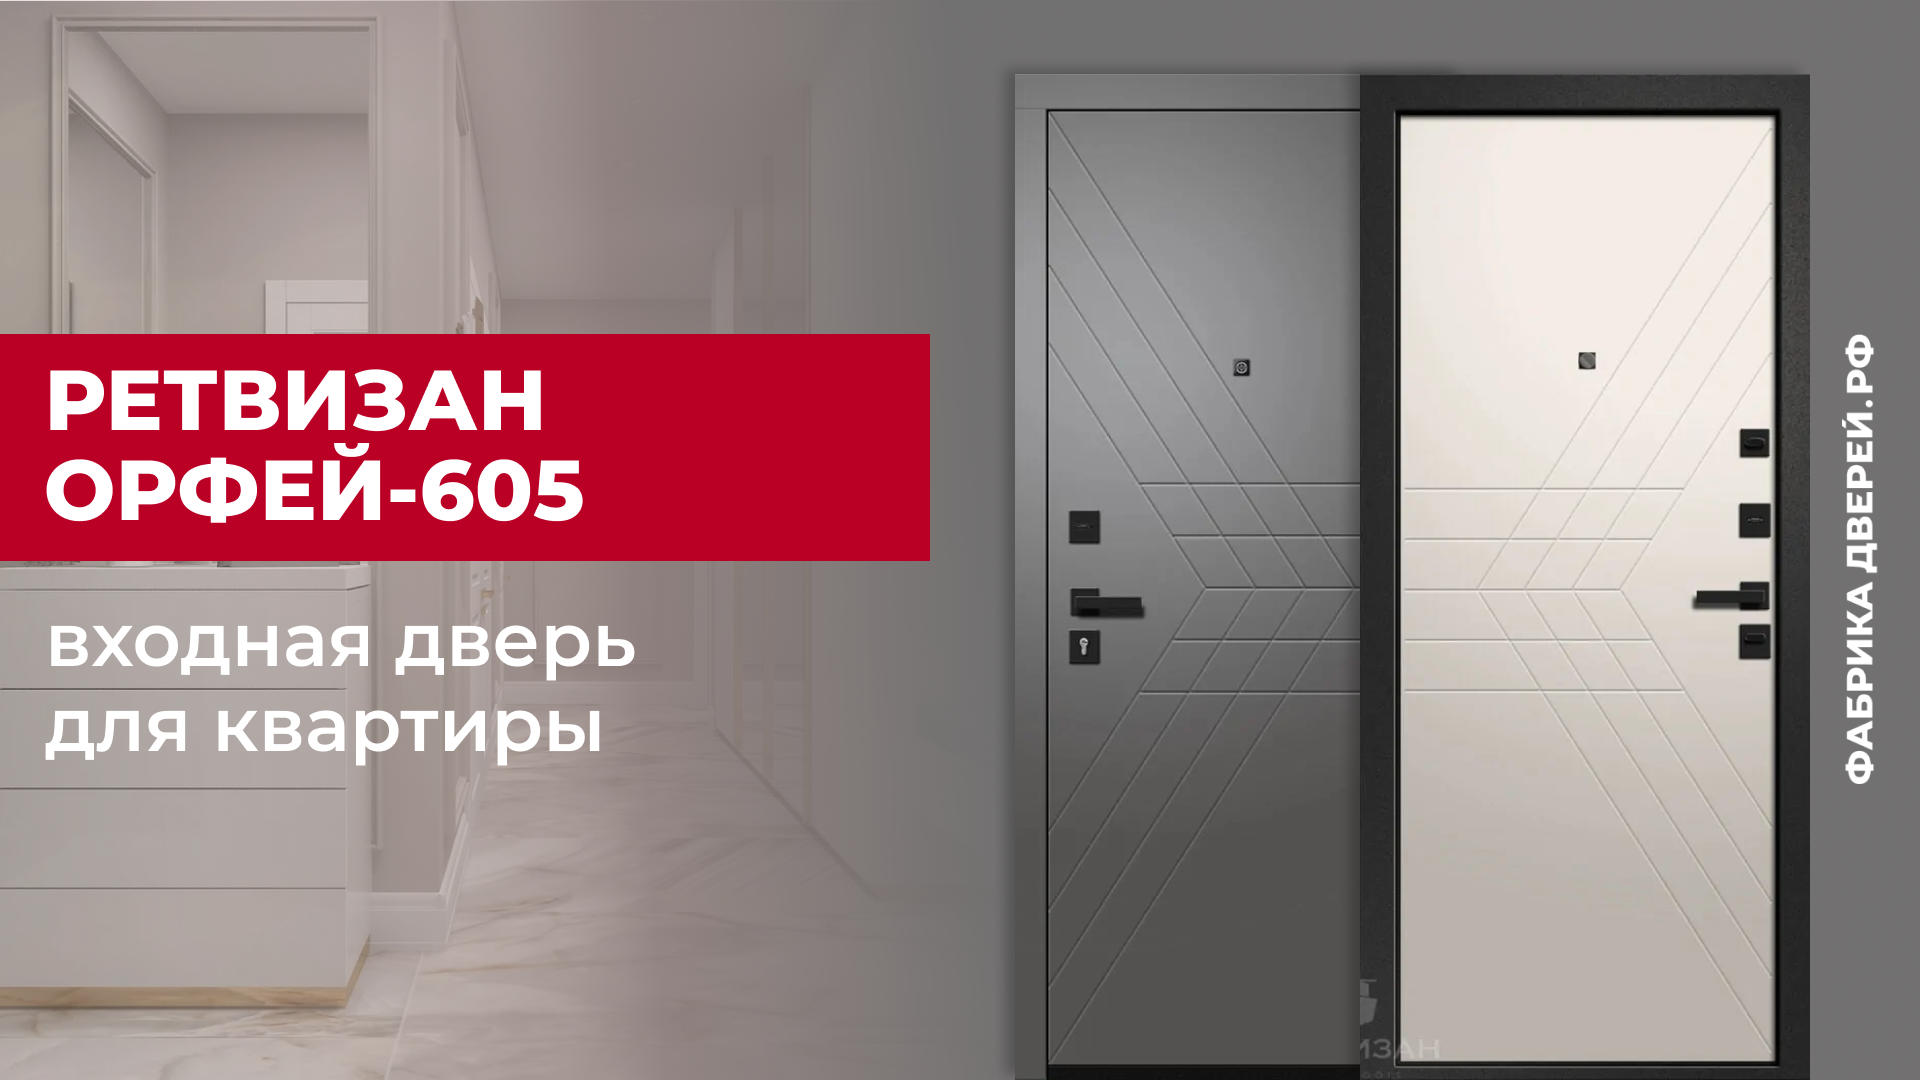 Входная дверь для квартиры Орфей-605 с фрезерованной МДФ завода Ретвизан с зеркалом #двери #diy #дом